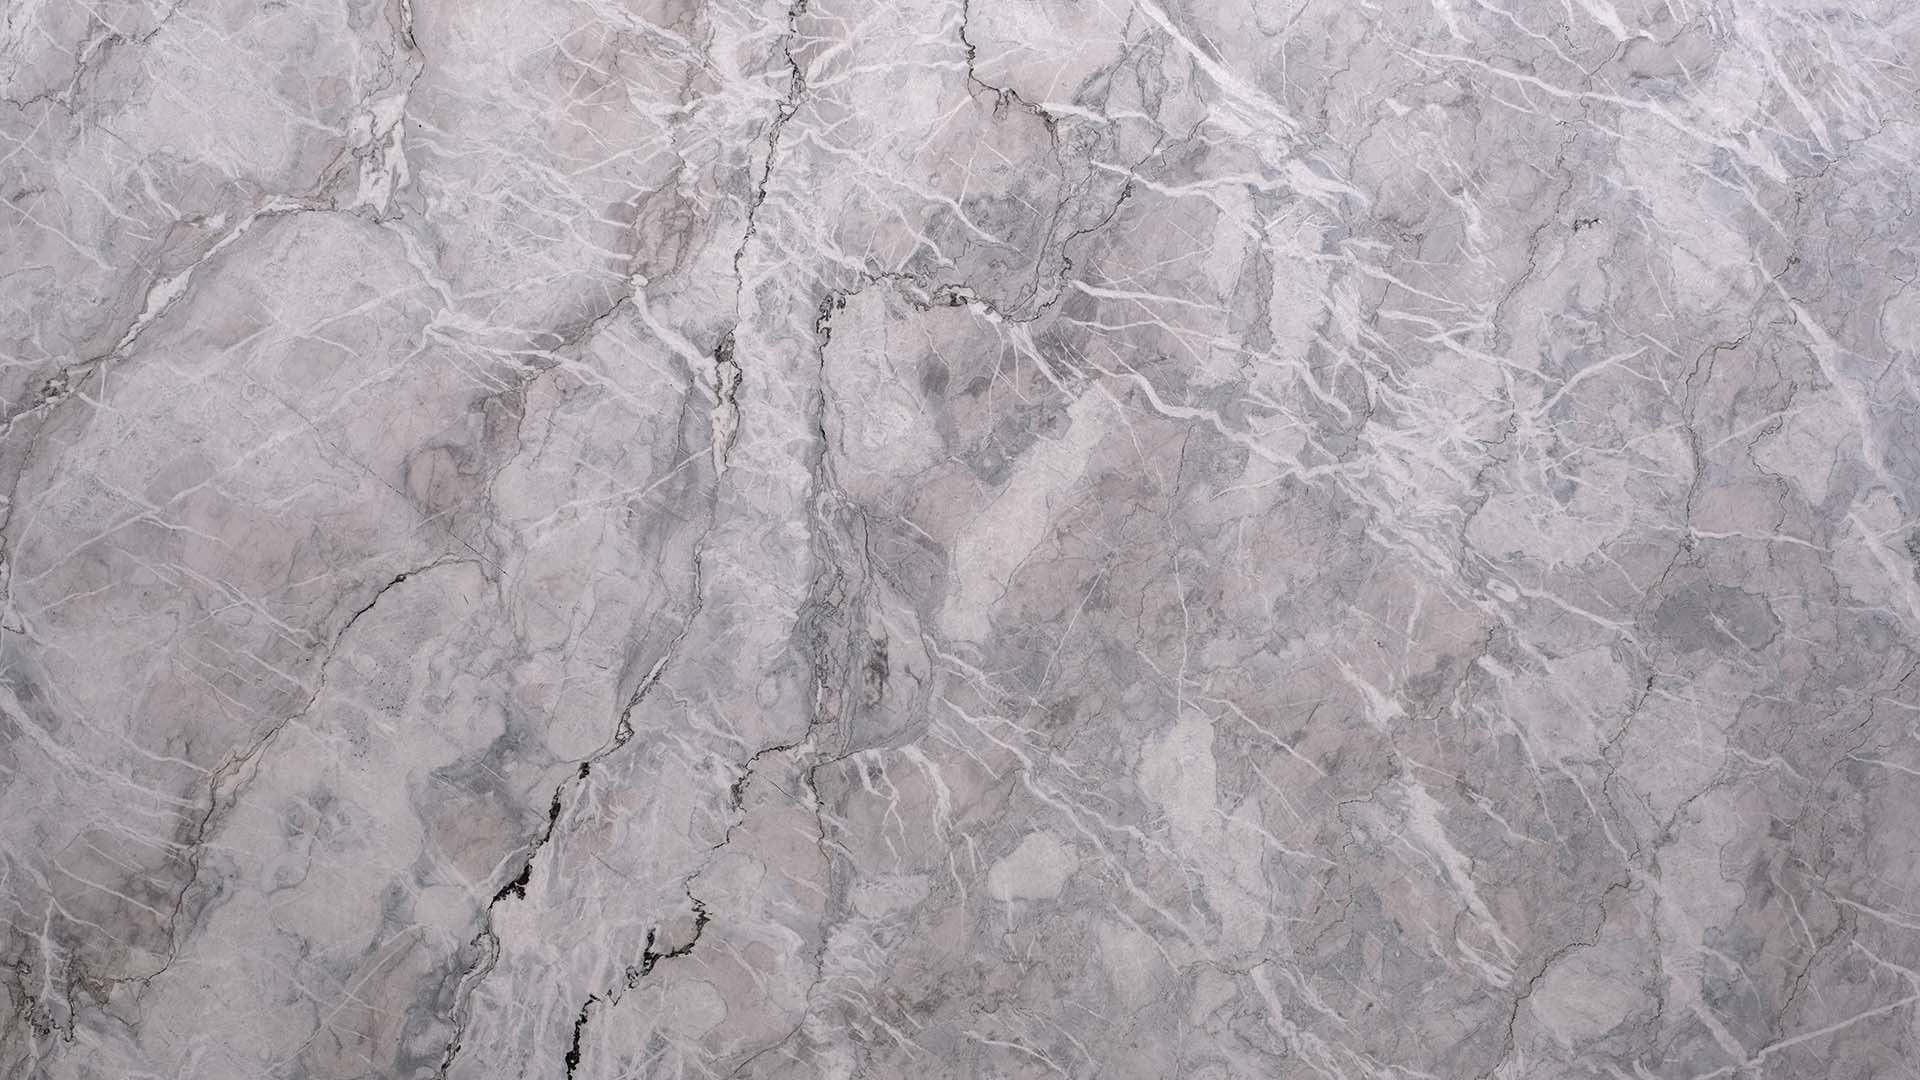 Naturstein Küchenarbeitsplatte in grau-weiss-schwarz mit starker Musterung, welche an Quellwolken erinnert und Partikel im Stein hat, welche glitzern.